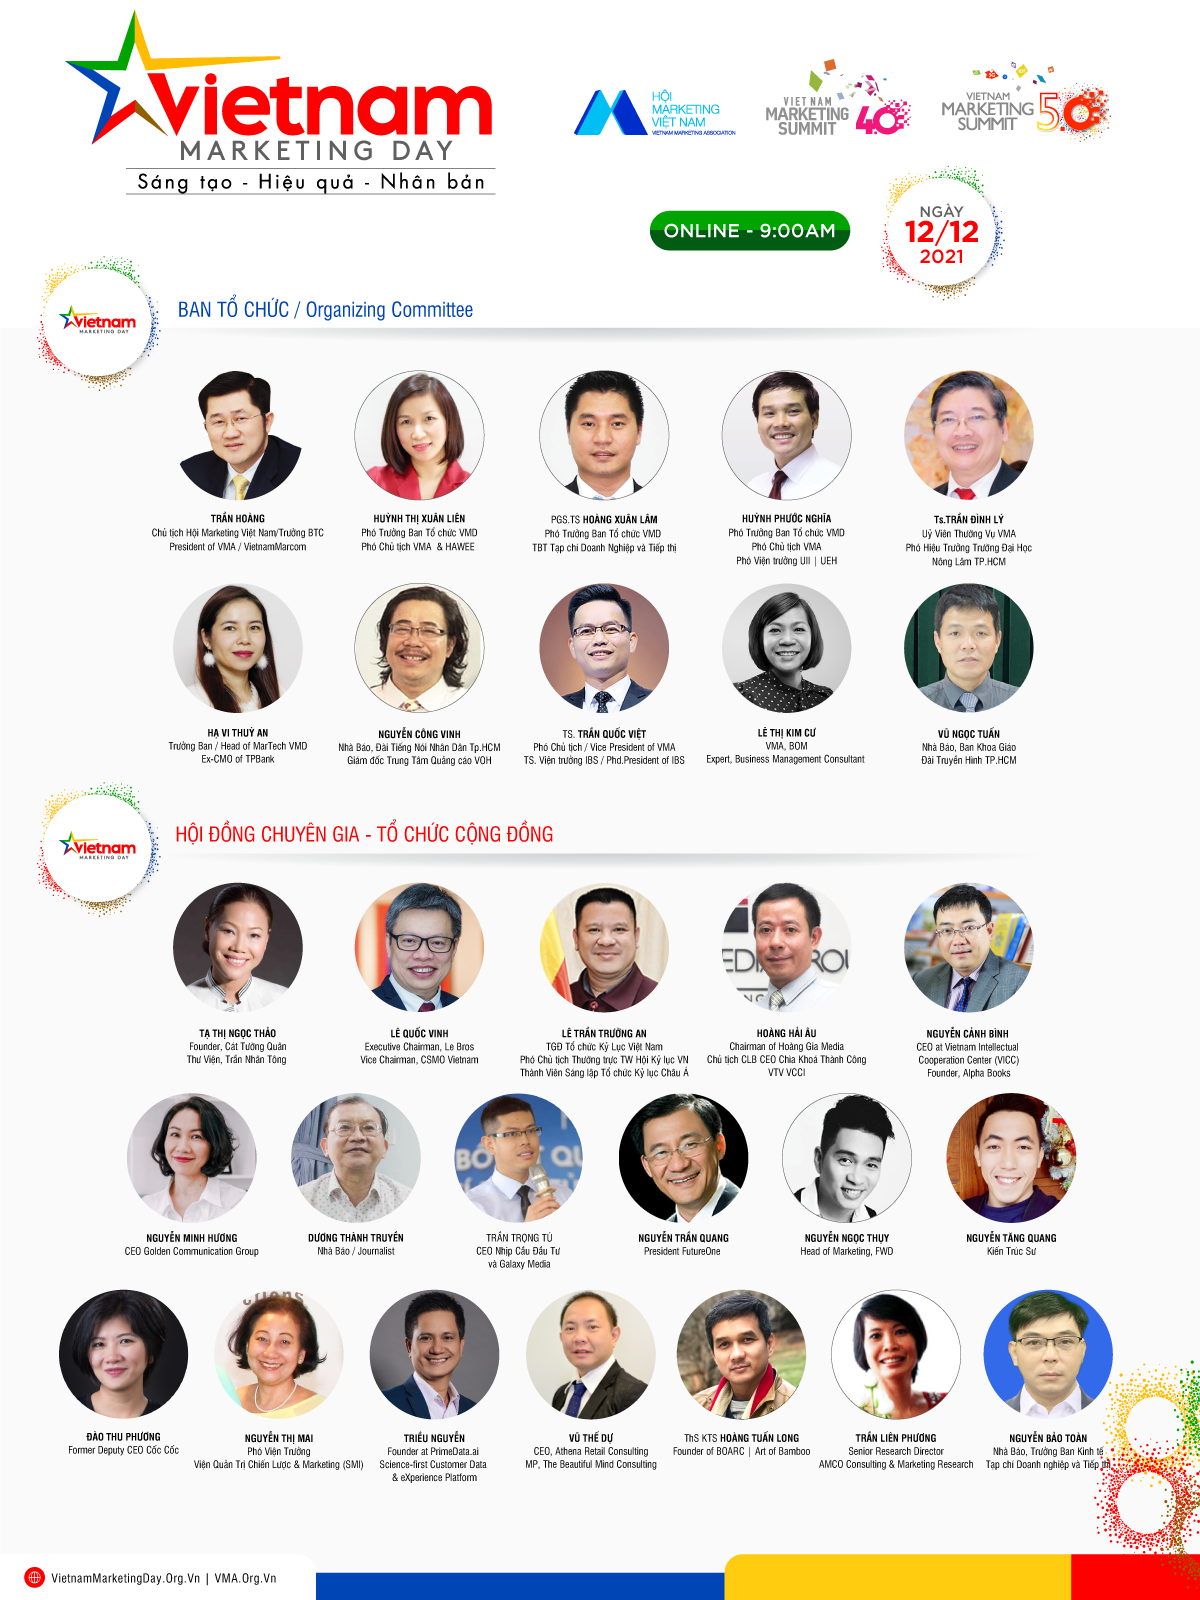 Kinh doanh - Vietnam Marketing Day - Nơi hội tụ các giá trị “Sáng tạo - Hiệu quả - Nhân bản” (Hình 4).